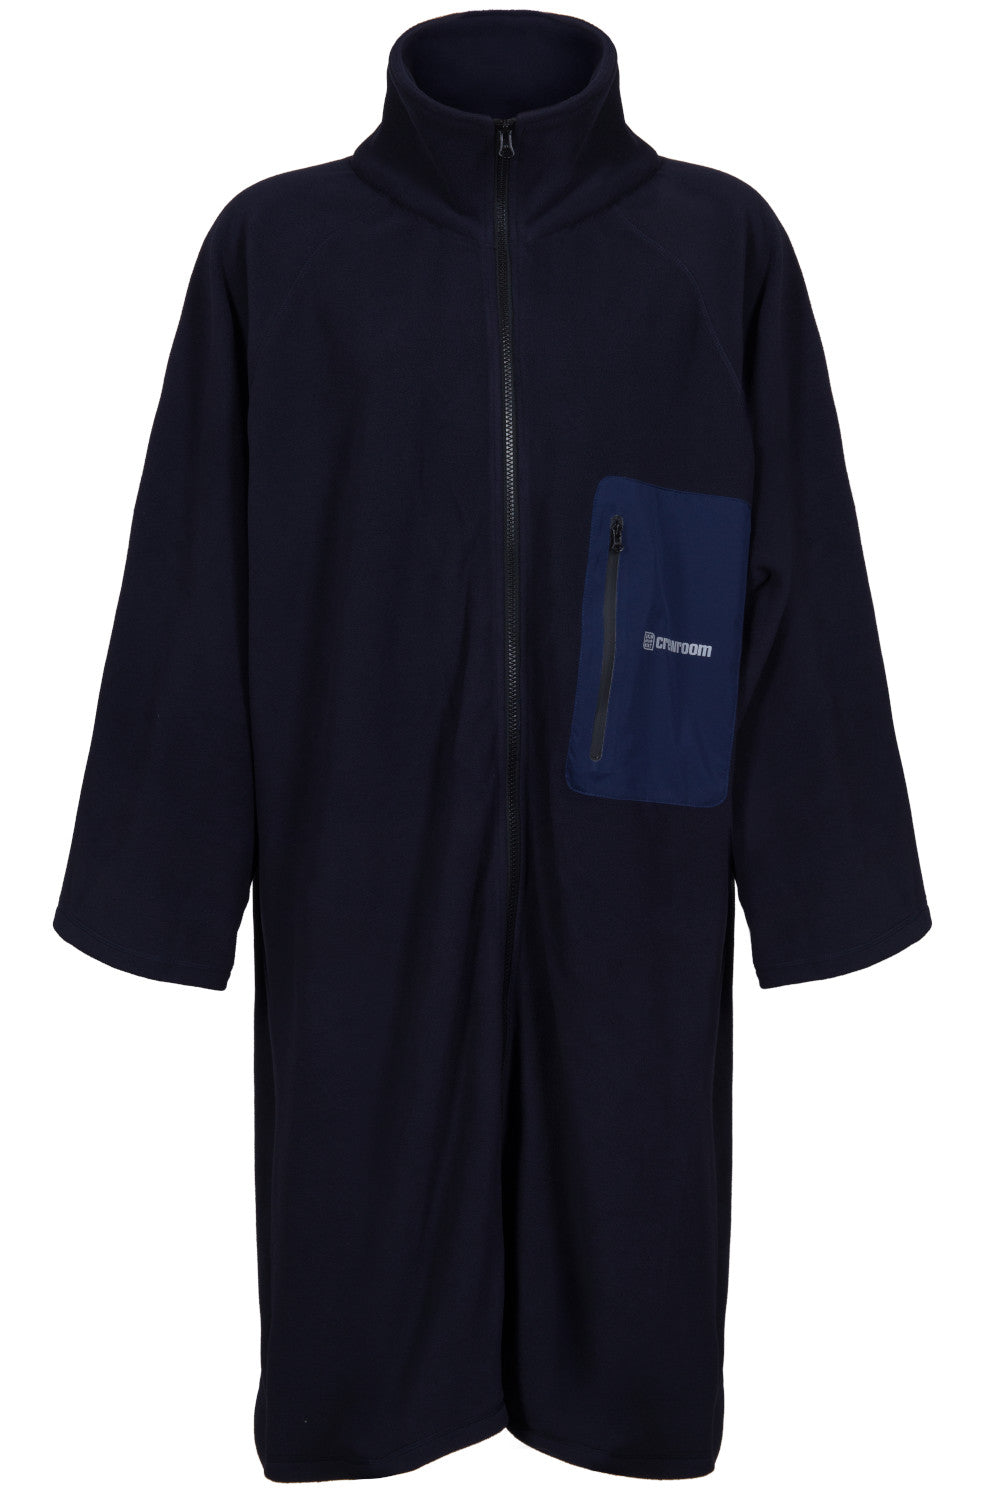 The Igloo Jacket (Unisex)